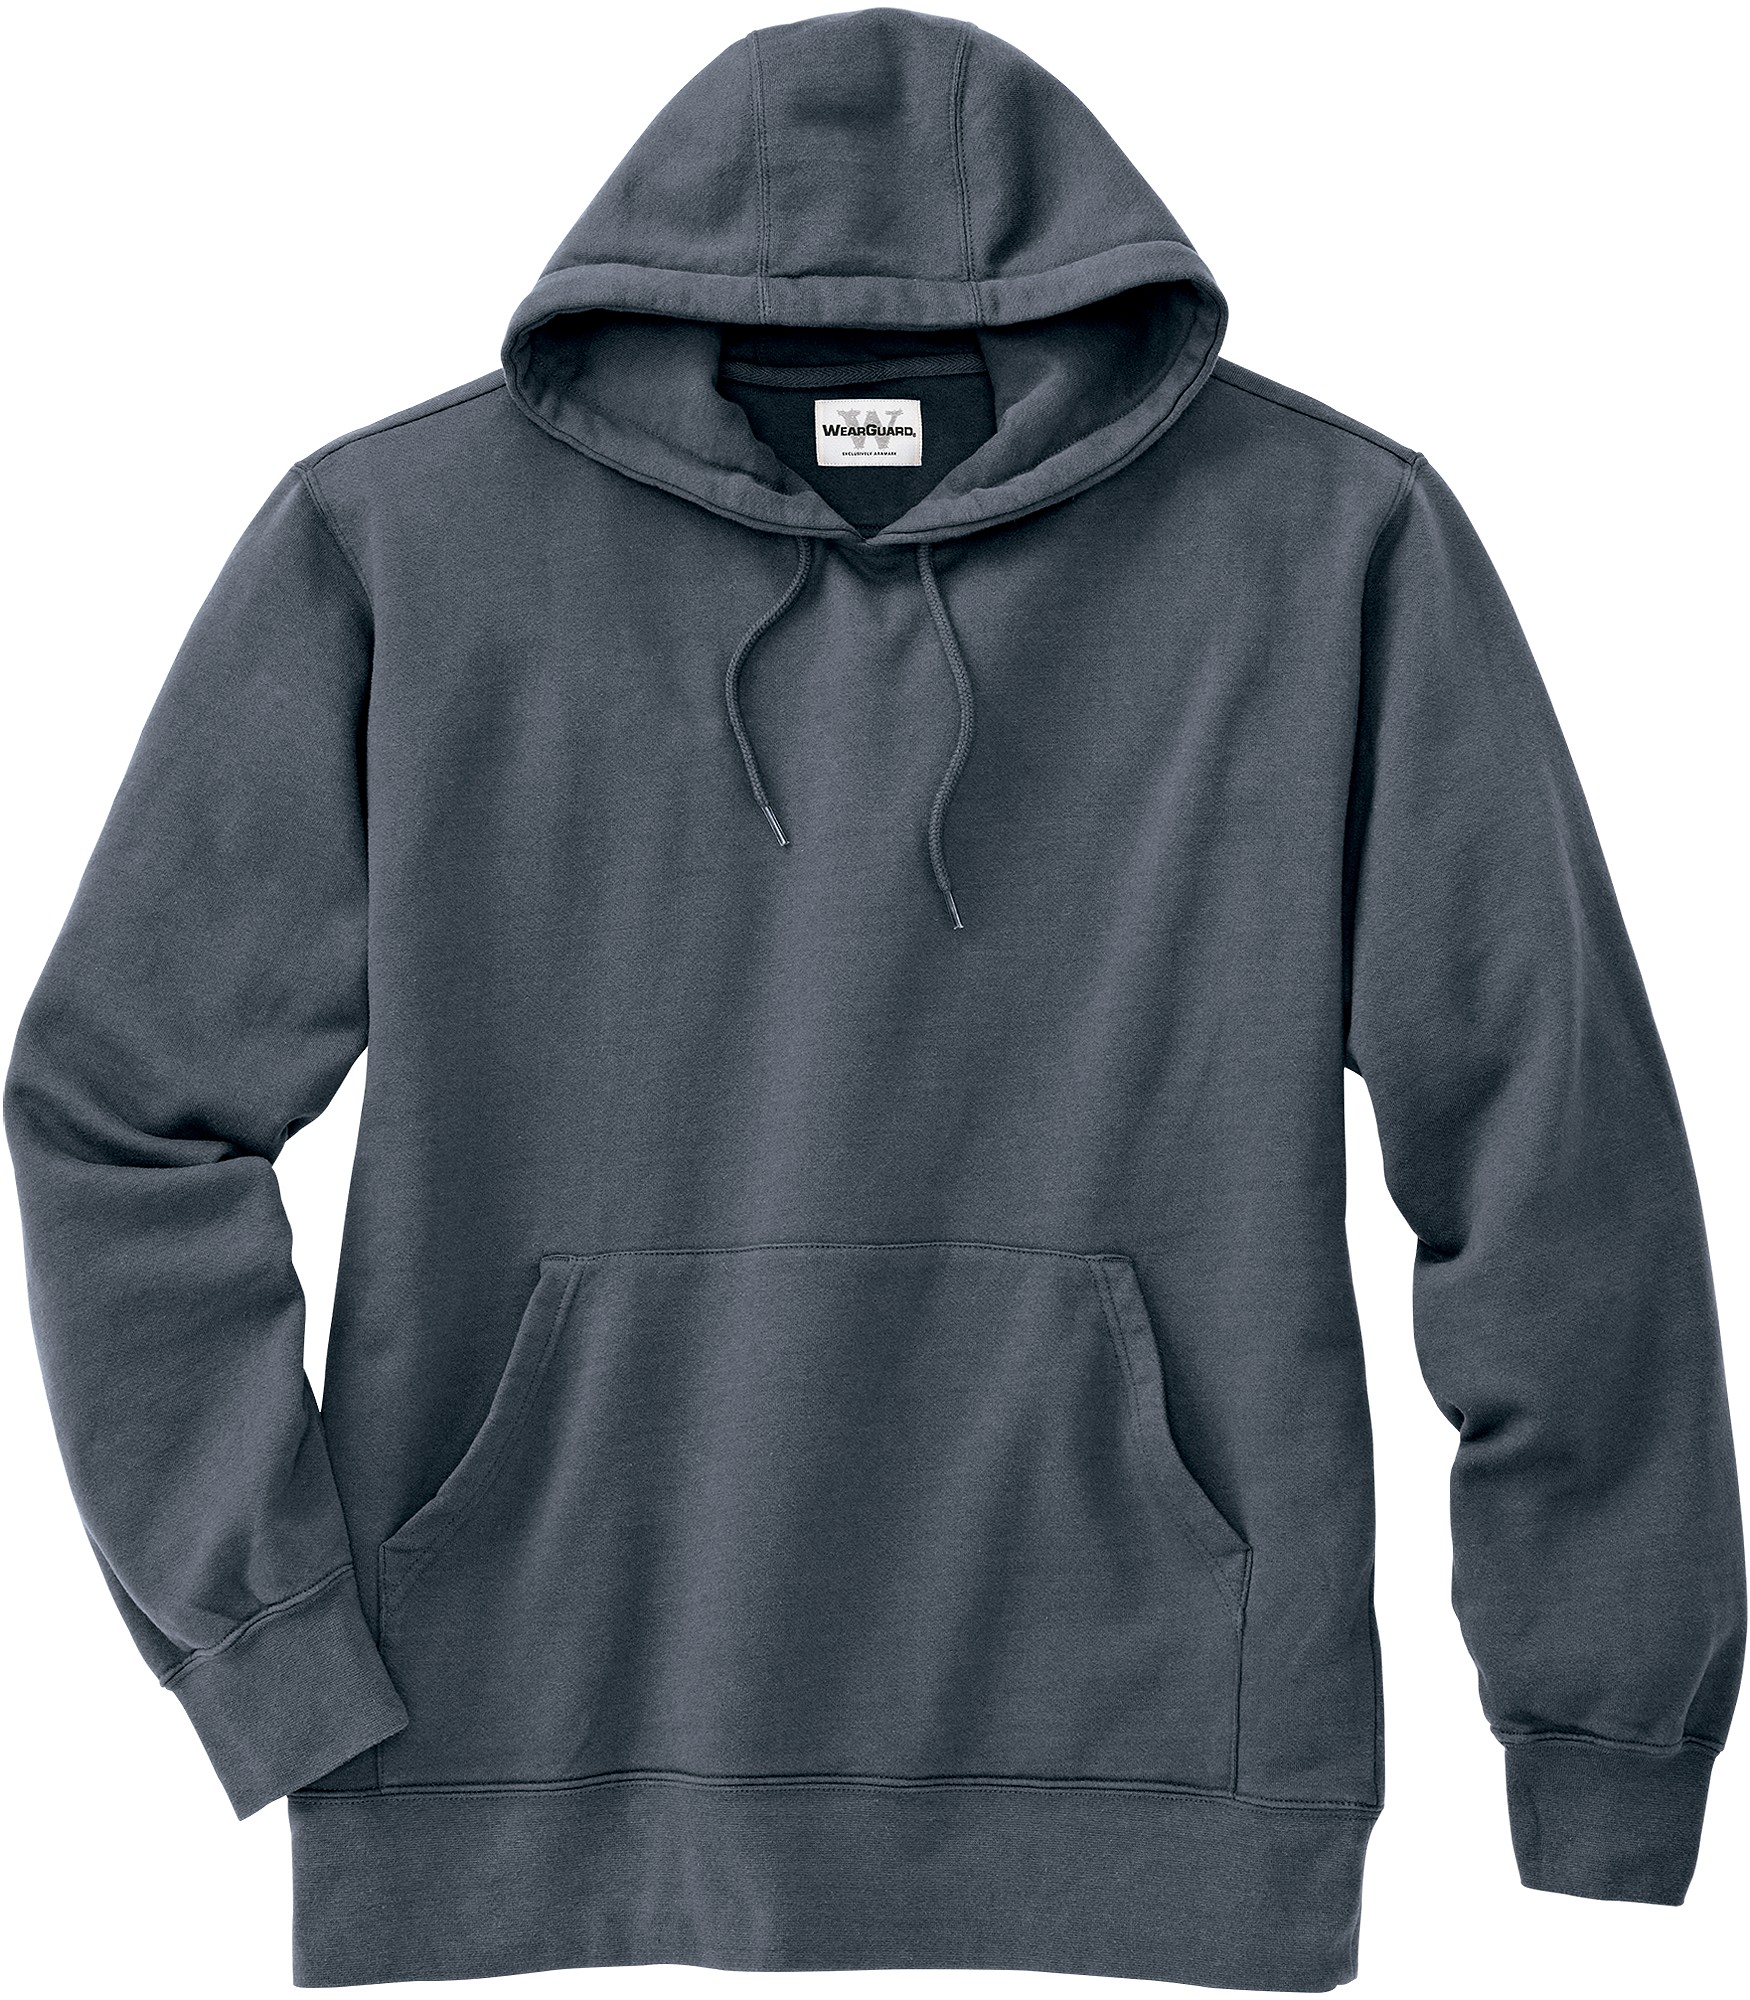 AMP_CA | WearGuard® WearTuff™ Low-Shrink Hooded Pullover Sweatshirt